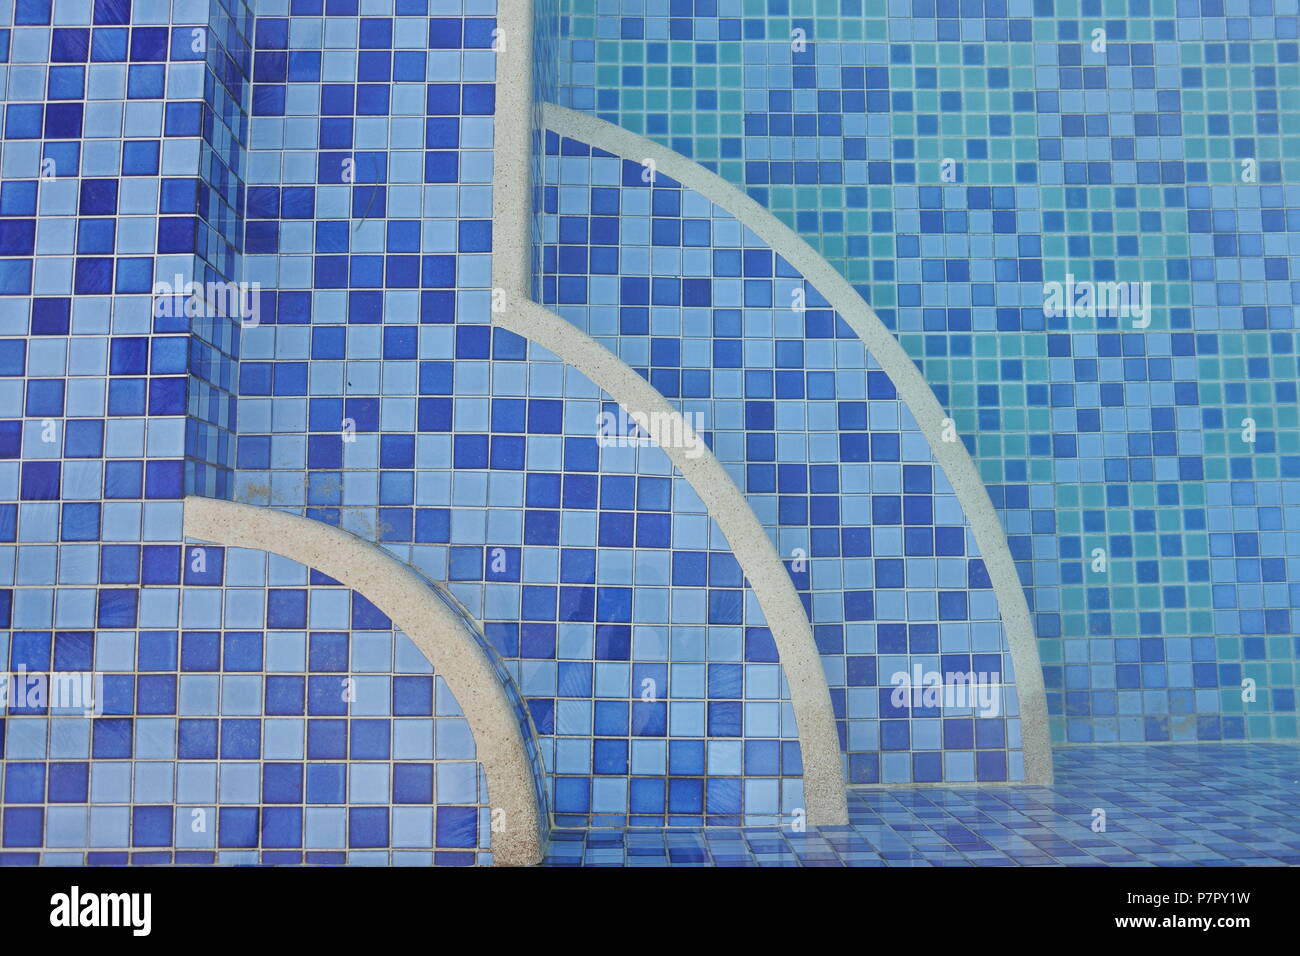 Une vue de dessus captivante d’une piscine ornée de carreaux bleus pixélisés, créant un effet dégradé. Le point focal est sur trois quarts de cercle-sh Banque D'Images